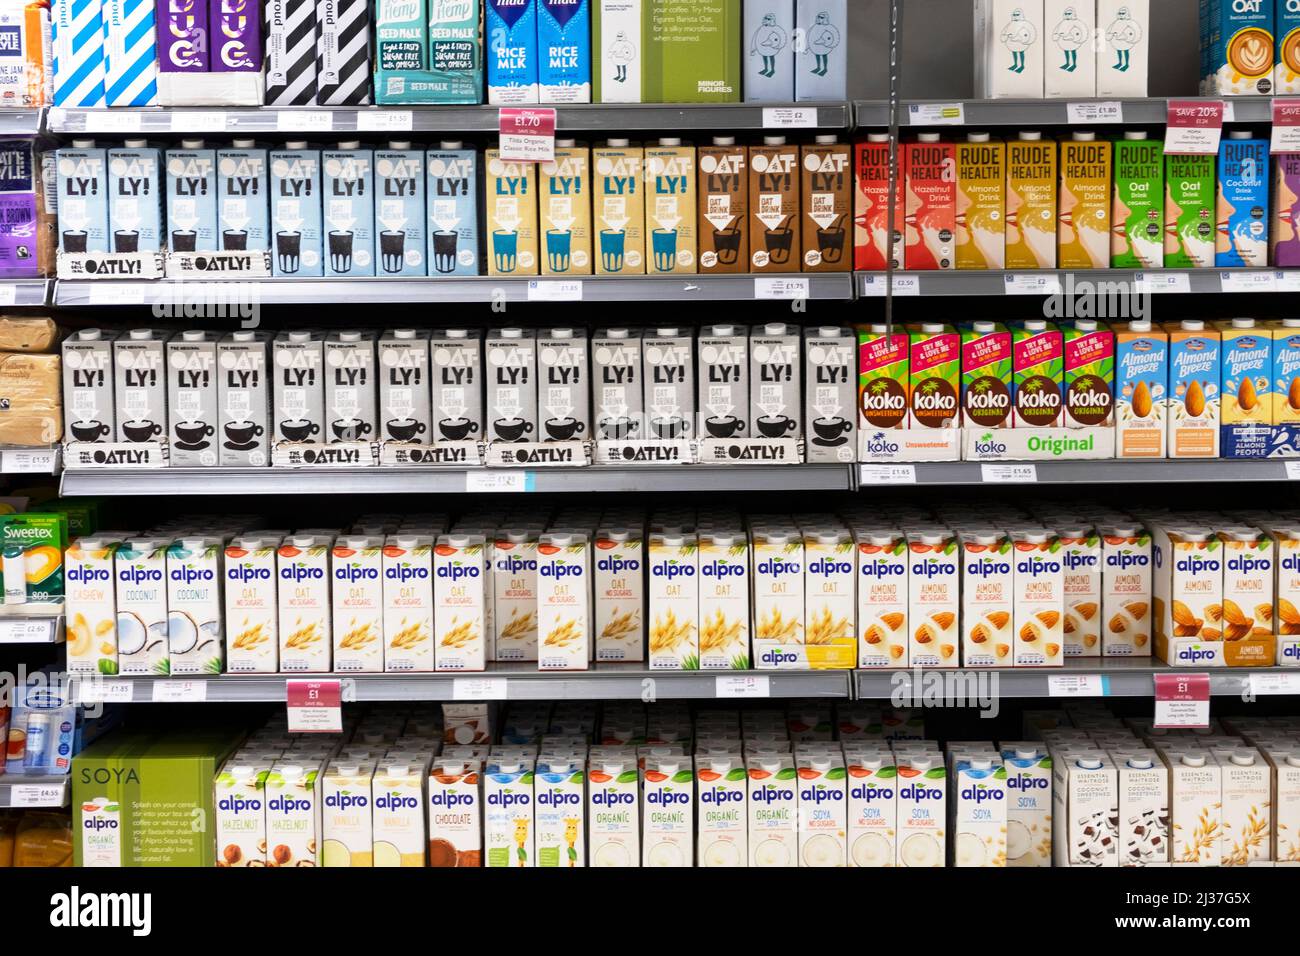 Rangées rangée de substituts de lait laiterie à base de plante gratuite à la vente sur les étagères de supermarché Waitrose étagère Oatly Alpro Koko rude Health Drinks Londres UK 2022 Banque D'Images